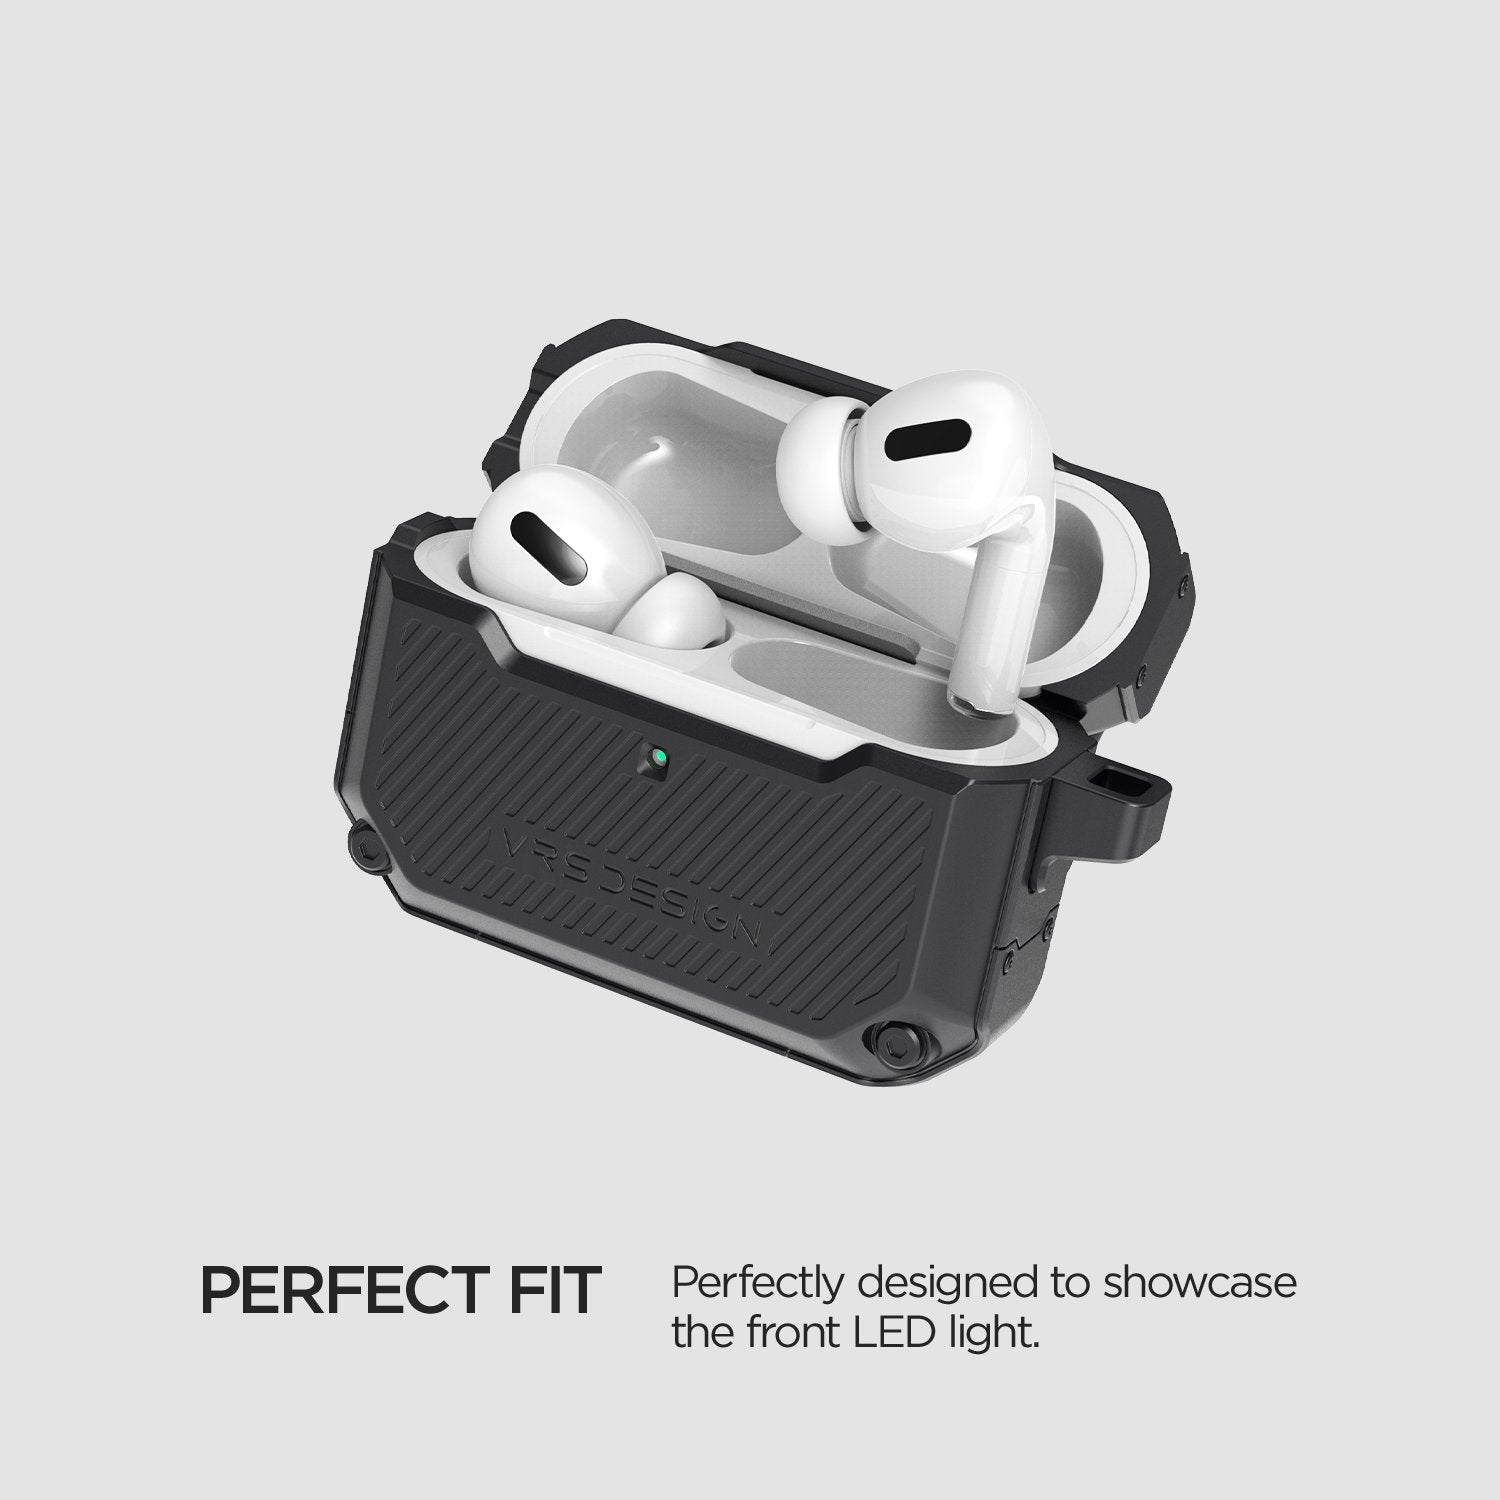 VRS Design Active Fit Case for Airpods Pro, Black Default VRS Design 